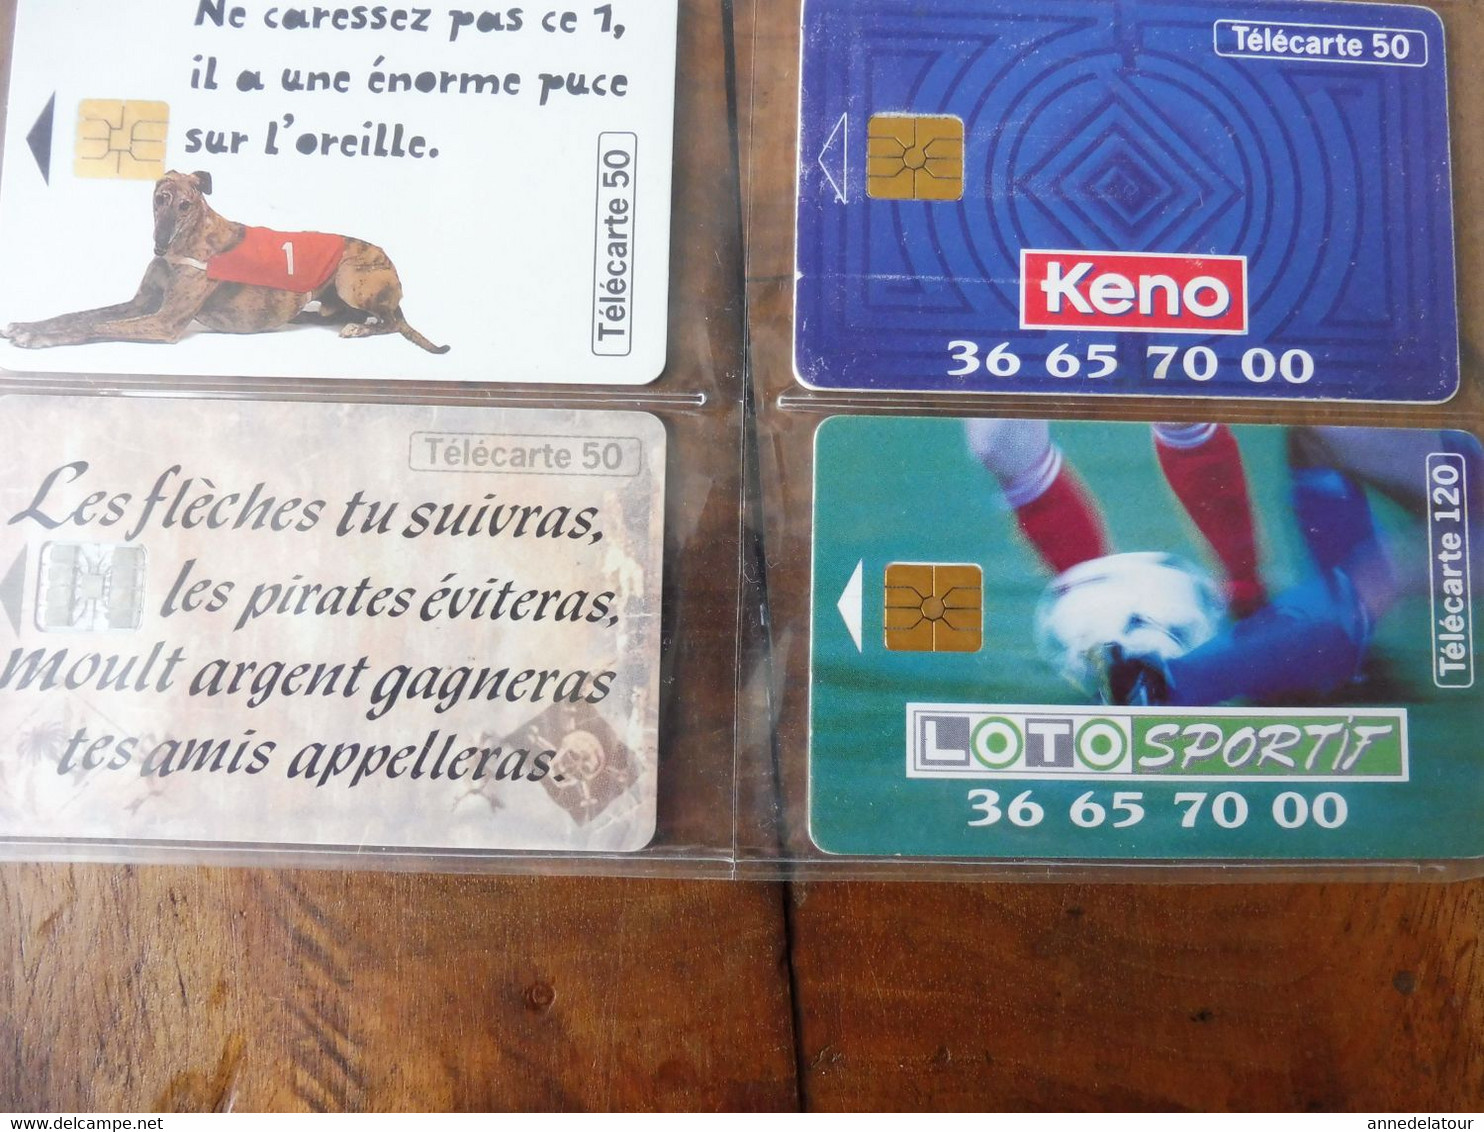 10 Télécartes (jeux à Gratter) FRANCE TELECOM  -> 100 Millions, Morpion, Keno, Banco, Loto Sportif, TacOtac, Super Loto - Games